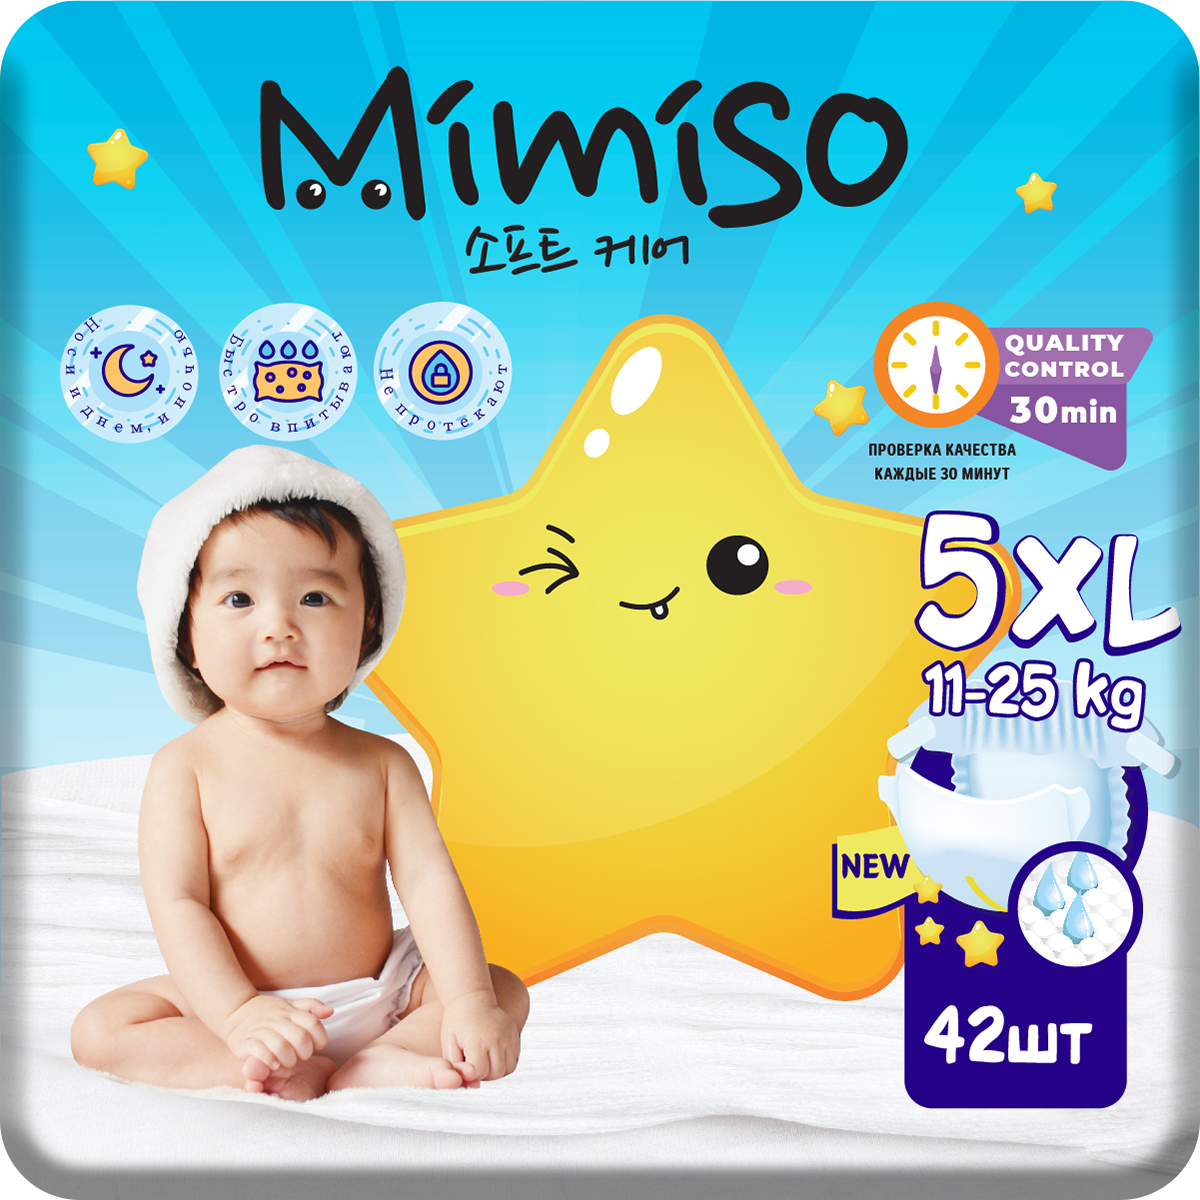 Подгузники Mimiso одноразовые для детей 5/XL 11-25 кг 42шт - фото 1